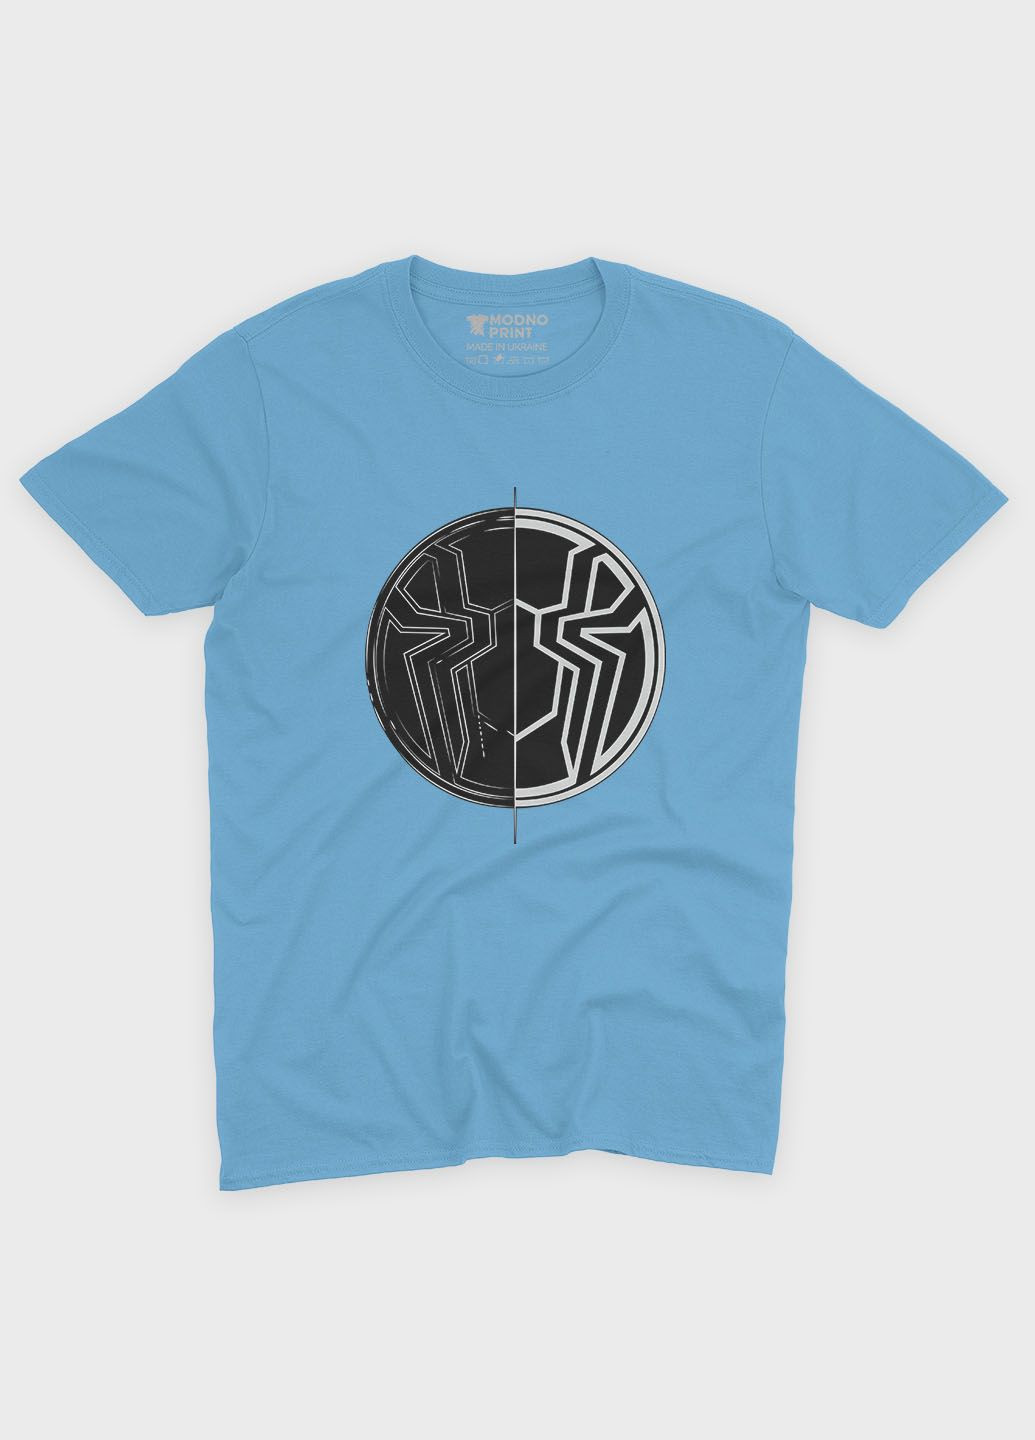 Голубая демисезонная футболка для мальчика с принтом супергероя - человек-паук (ts001-1-lbl-006-014-089-b) Modno